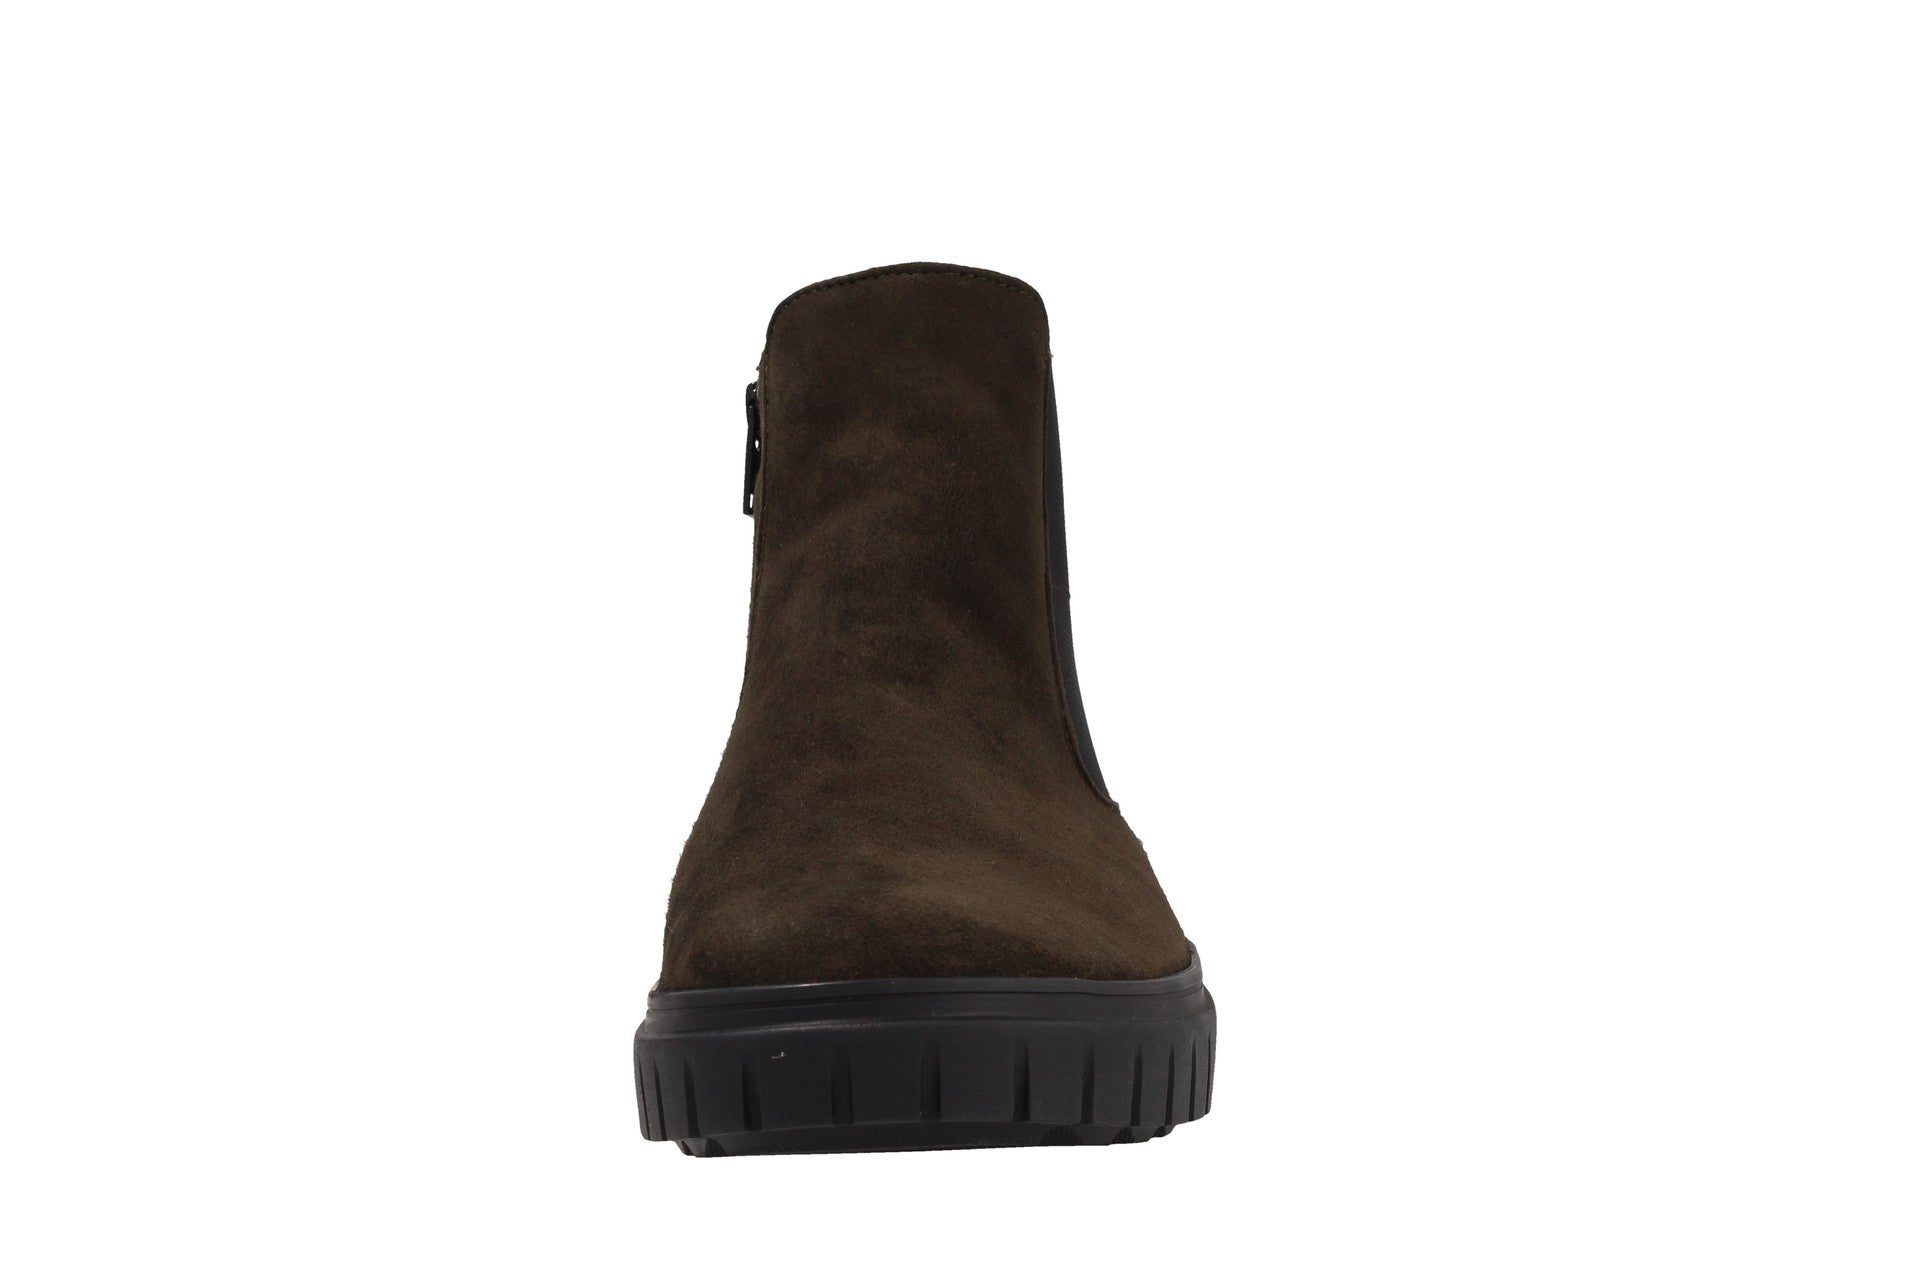 Sina – fir – boots